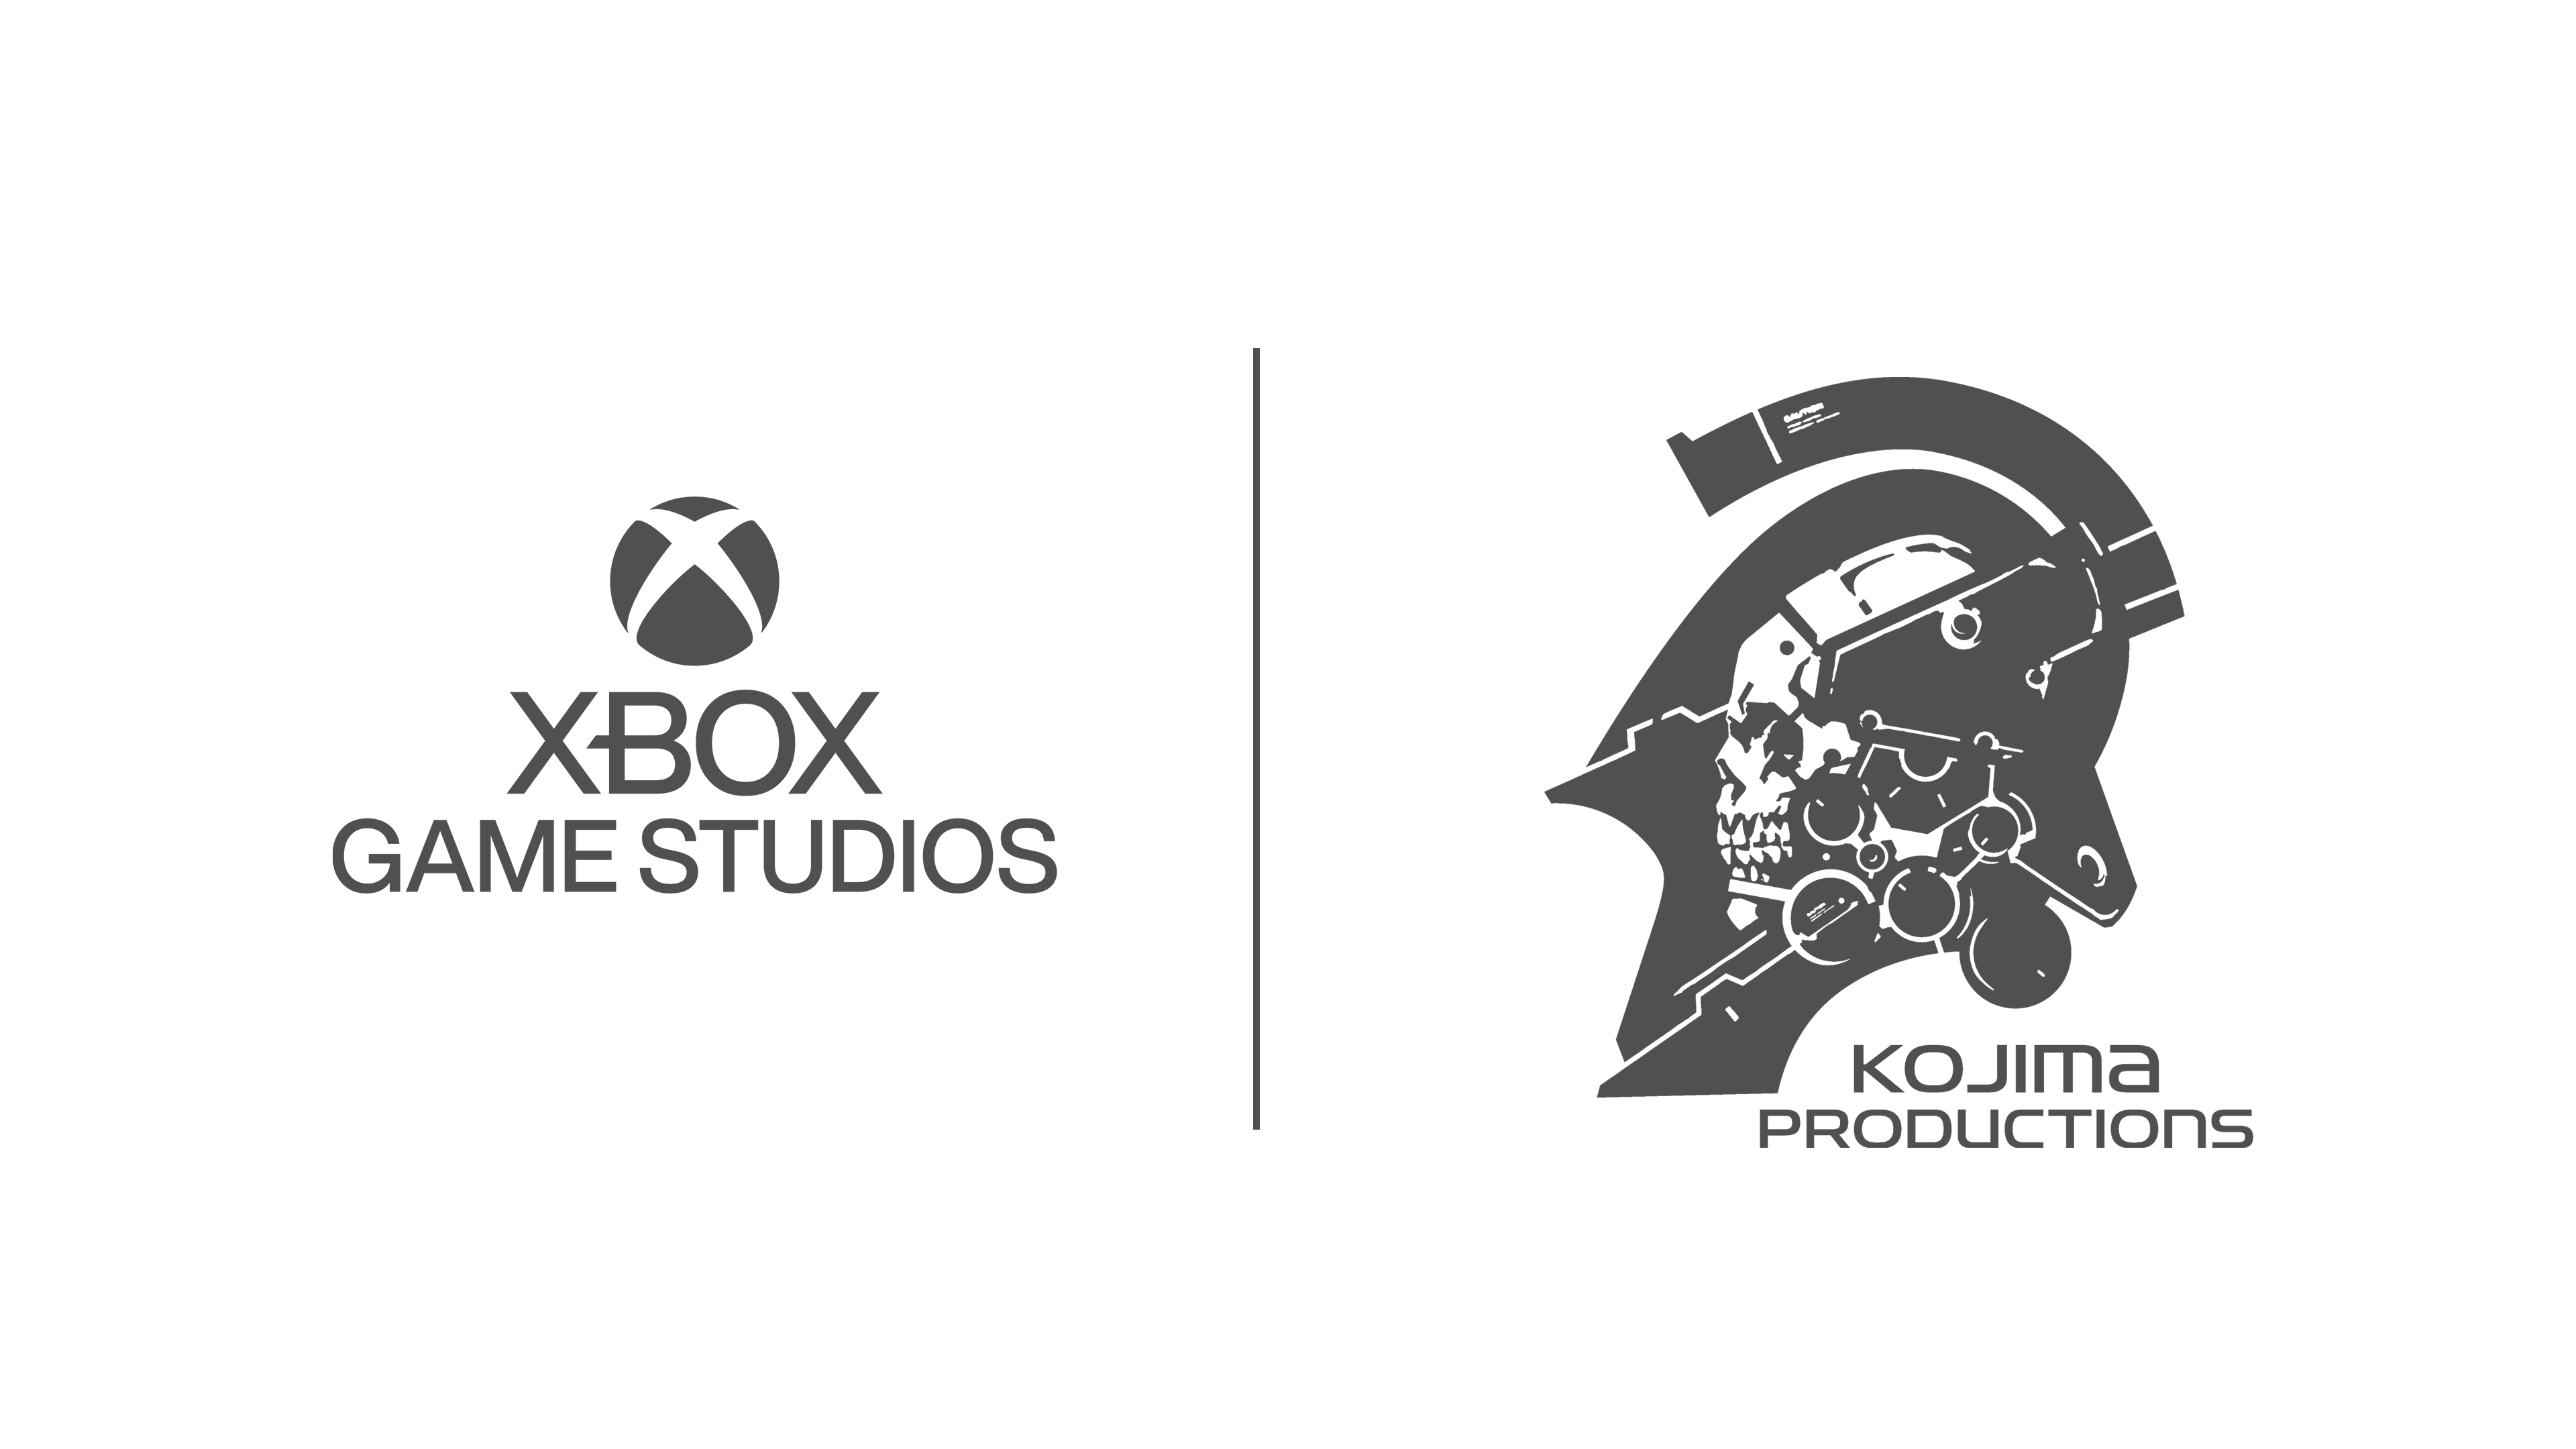 Partenariat entre Kojima Productions et Xbox Game Studios pour une exclu cloud gaming 